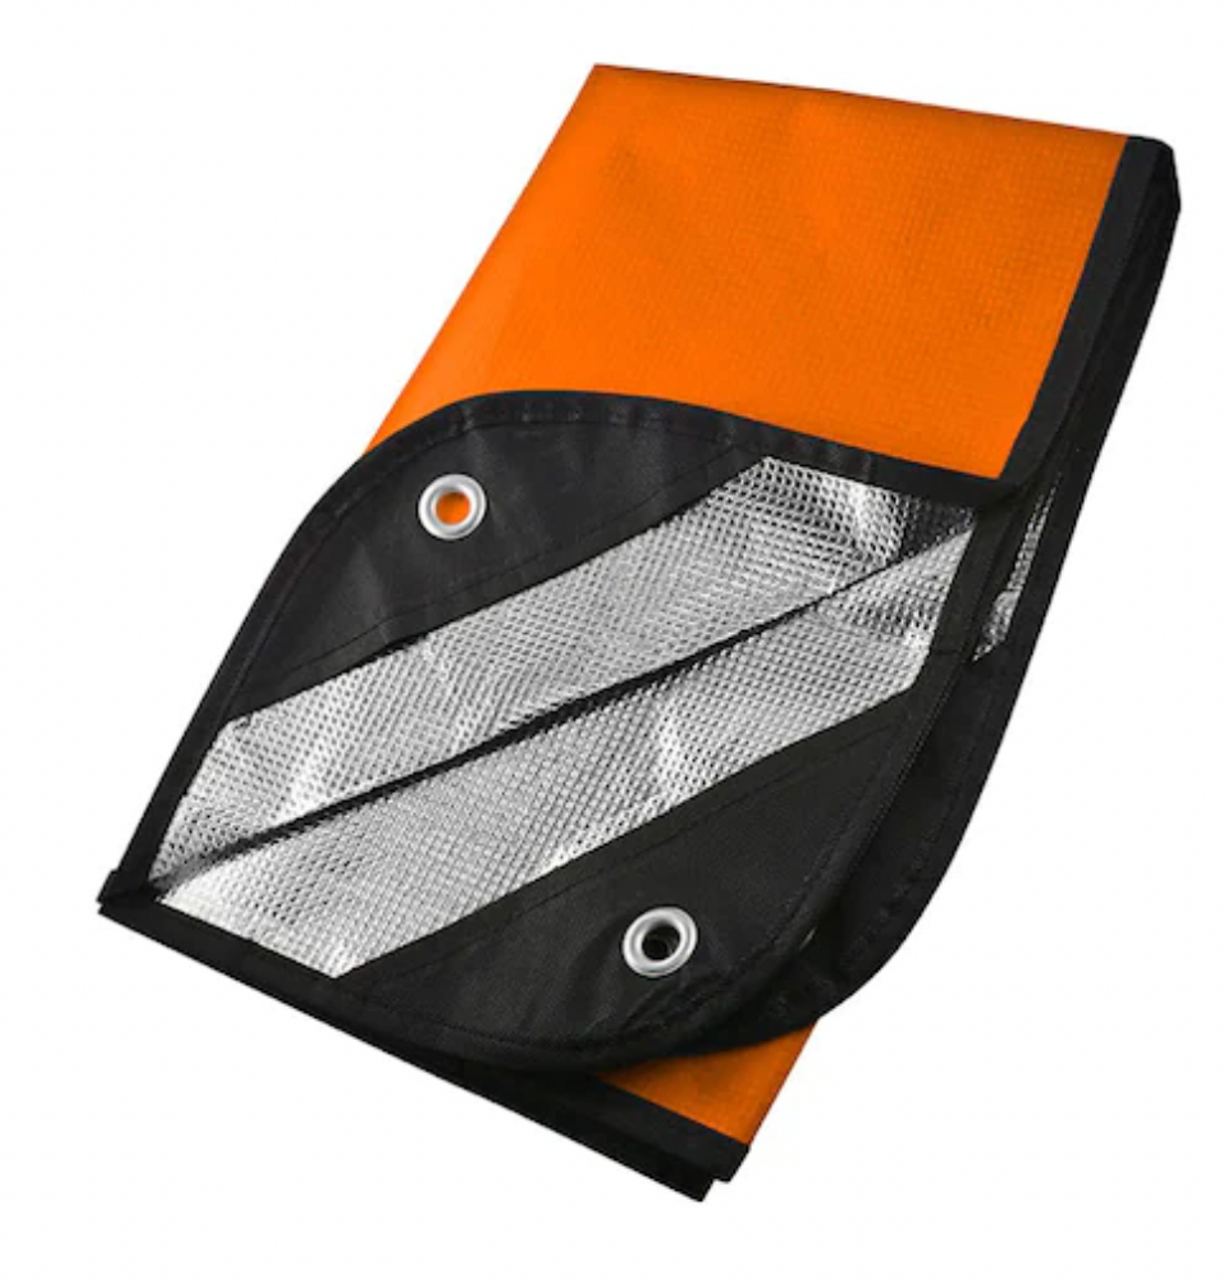 Deluxe Thermal Blanket | All-Purpose Blanket | Emergency Survival Gear